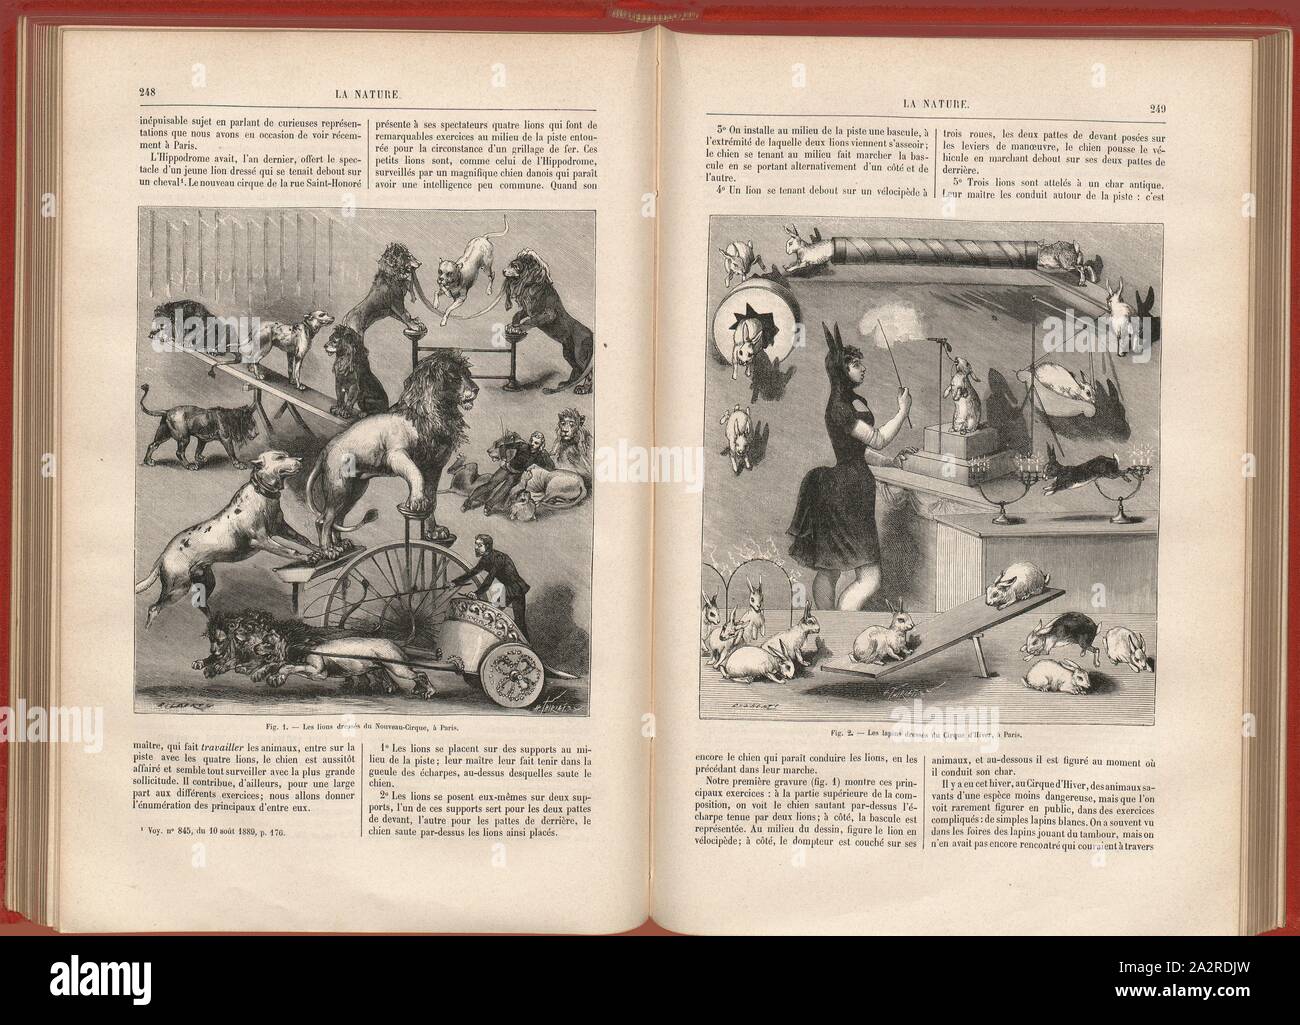 Un animale da circo, Fig. 1: Les lions dressés du Nouveau-Cirque, à Paris, Fig. 2: Les lapins dressés du Cirque d'Hiver, à Paris, firmato: Gilbert; H. Thiriat sc., Fig. 1-2, pagg. 248-249, Gilbert (fec.); Thiriat, H. (sc.), 1882, Science progrès découverte: revue publiée avec la partecipazione de la Société des Ingénieurs Civils de France. No. 10. Parigi: Dunod, 1882 Foto Stock